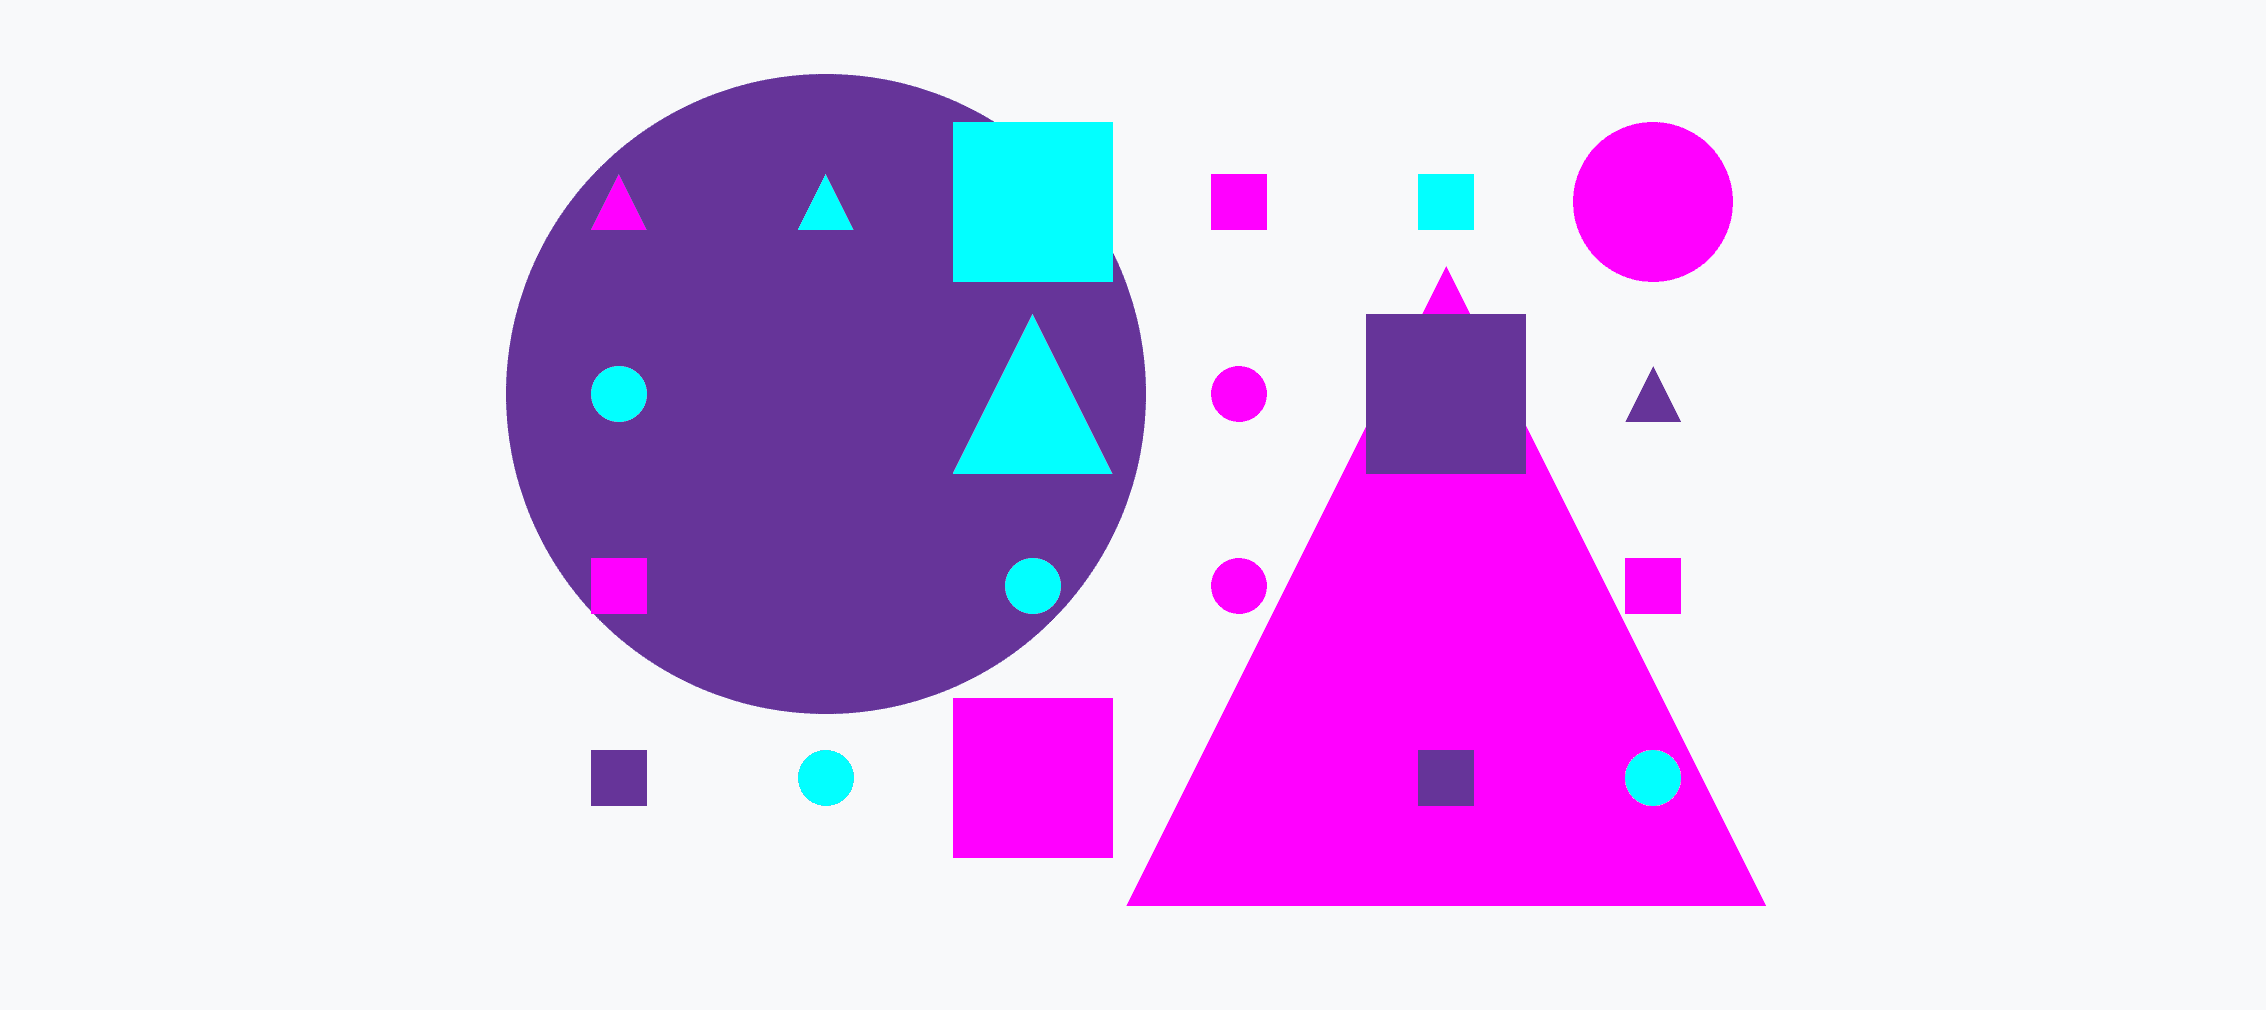 由小圆和大圆、三角形和正方形组成的彩色网格。